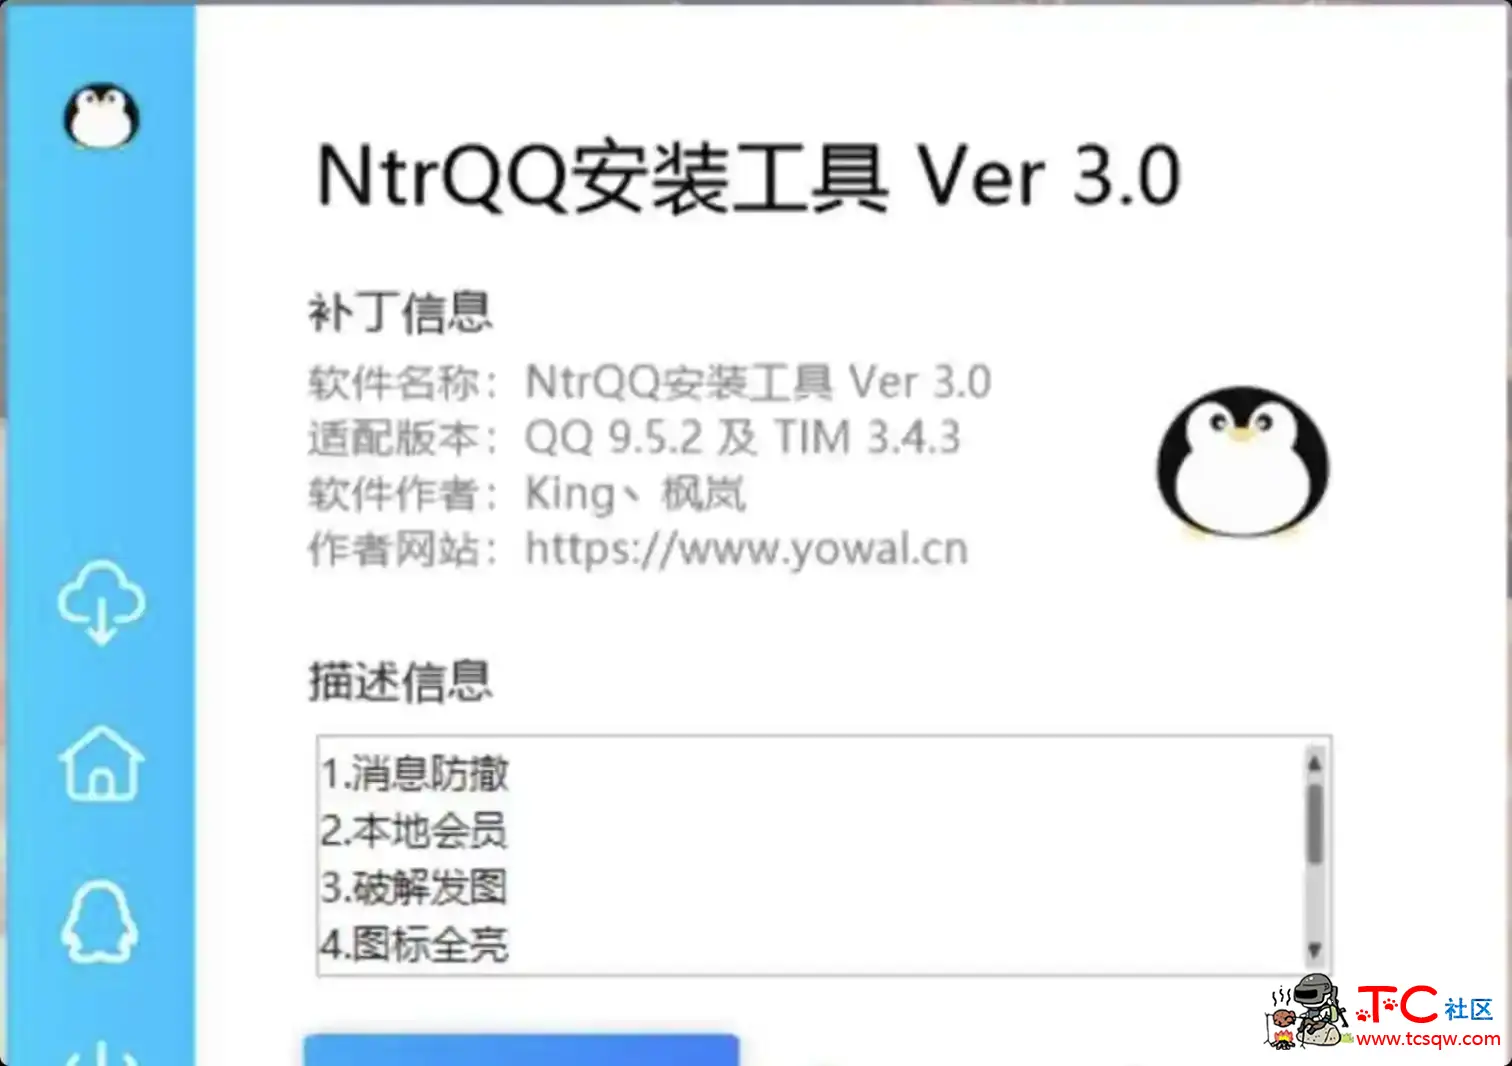 NtrQQ安装工具 Ver 3.0 屠城辅助网www.tcfz1.com465